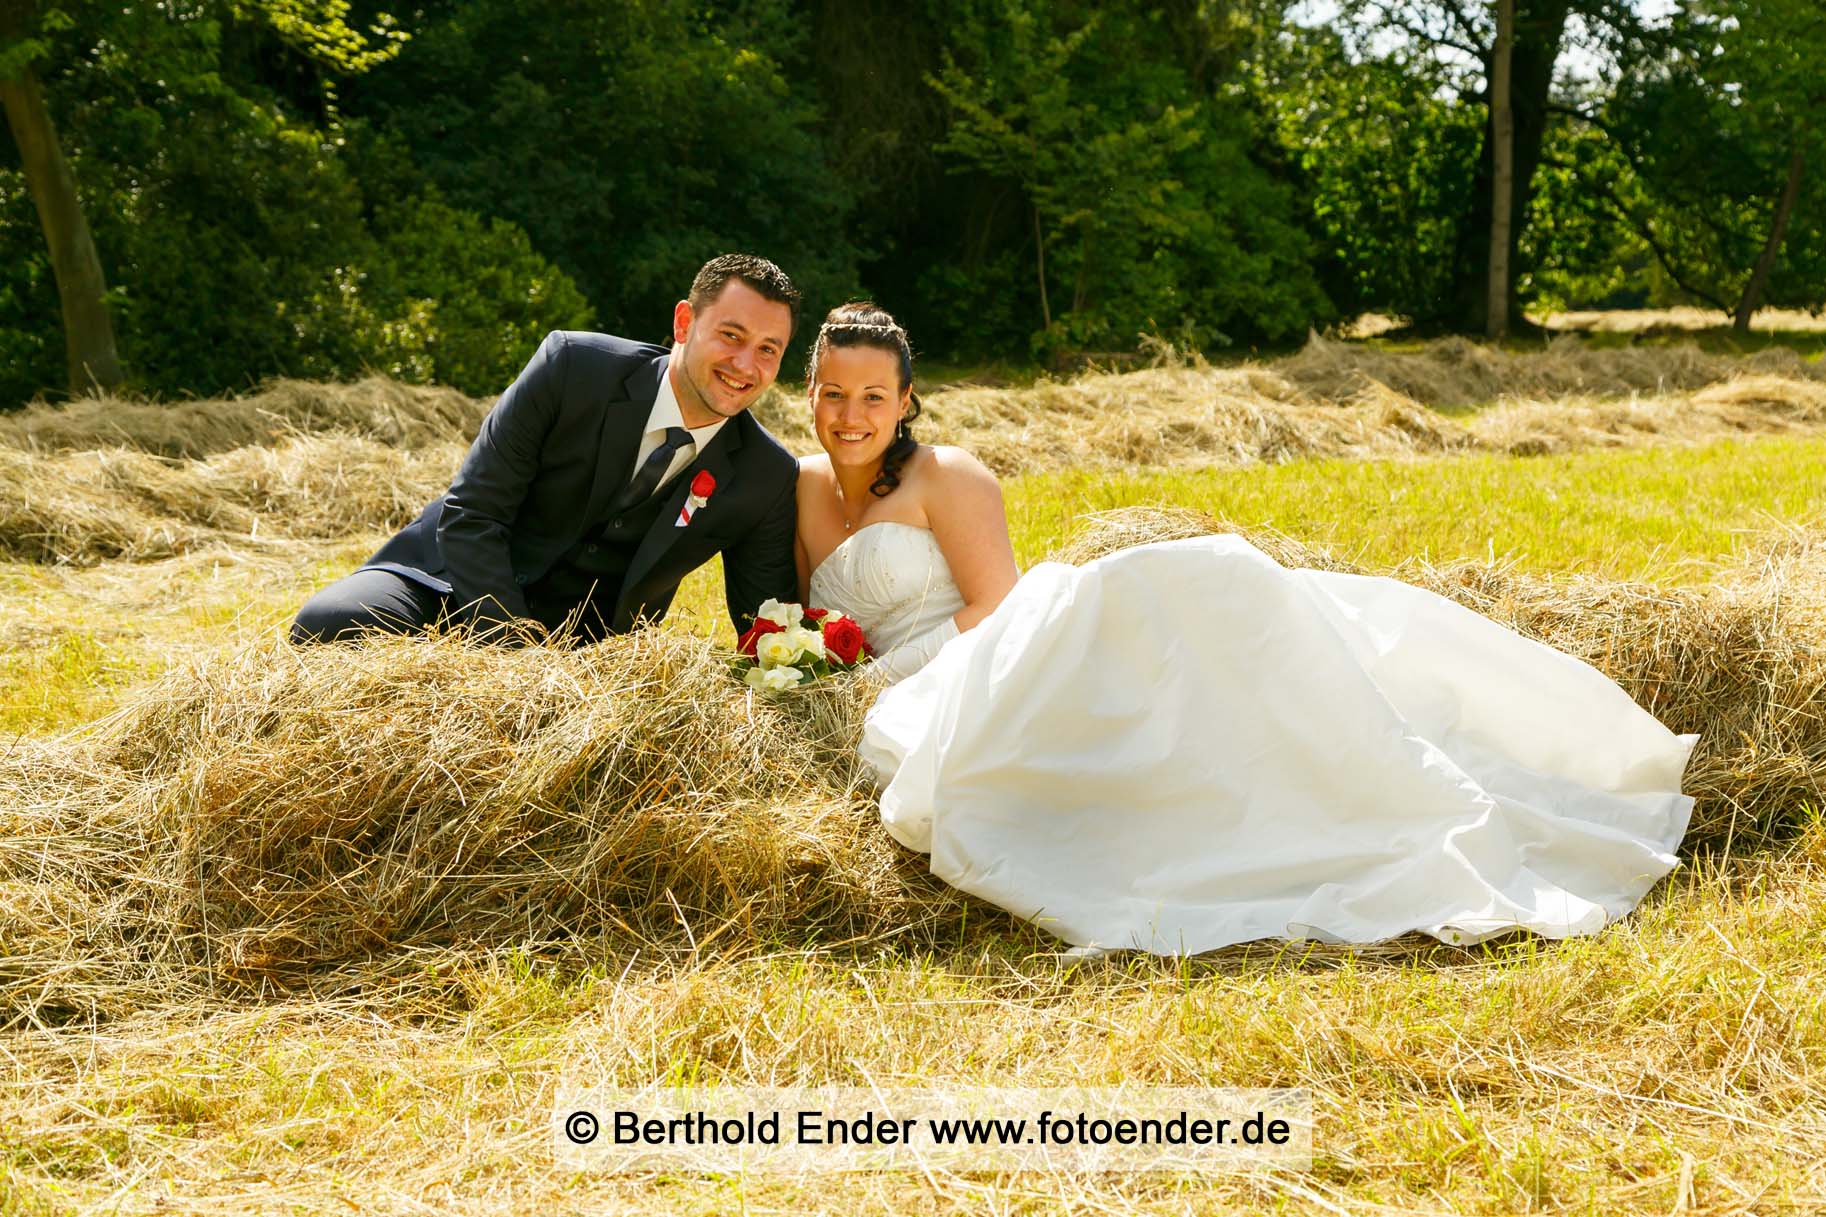 Hochzeitsbilder im Wörlitzer Park, Fotostudio Ender